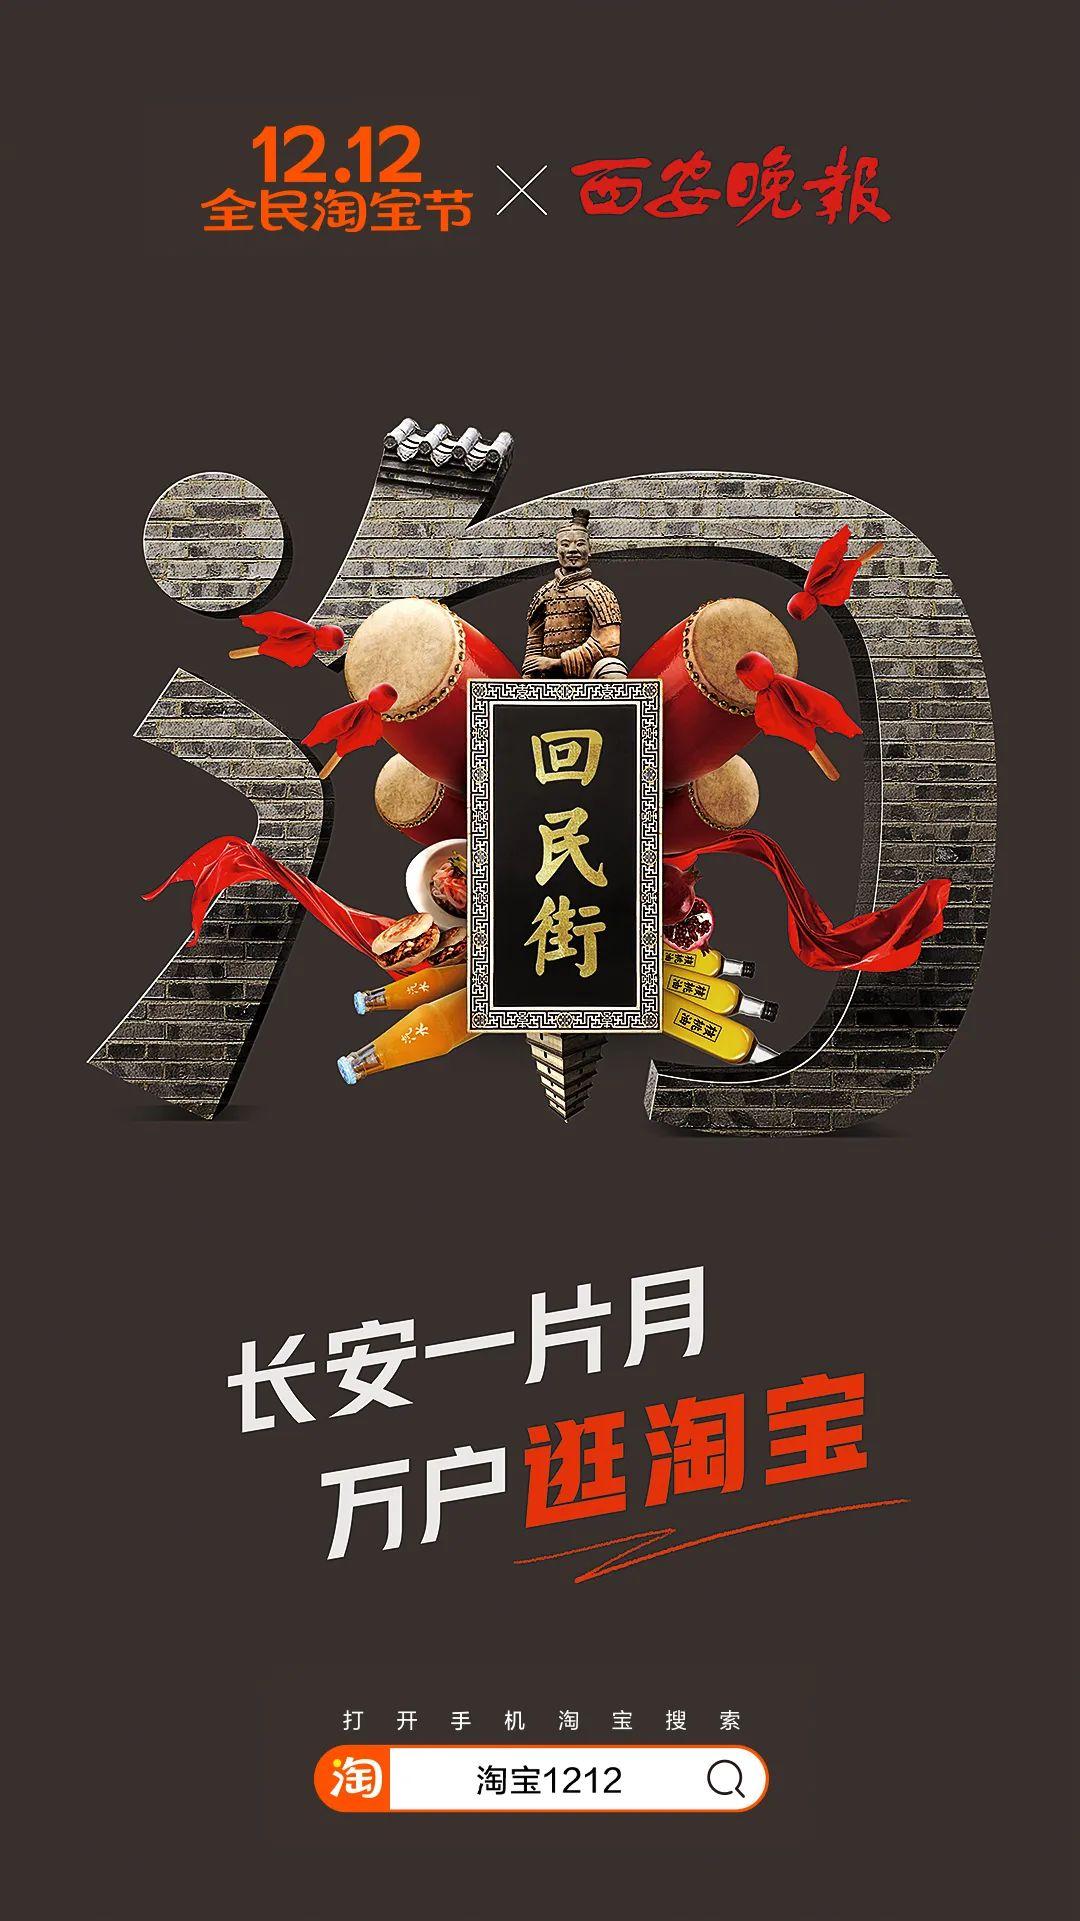 淘宝连发64张海报：一个「淘」字逛中国